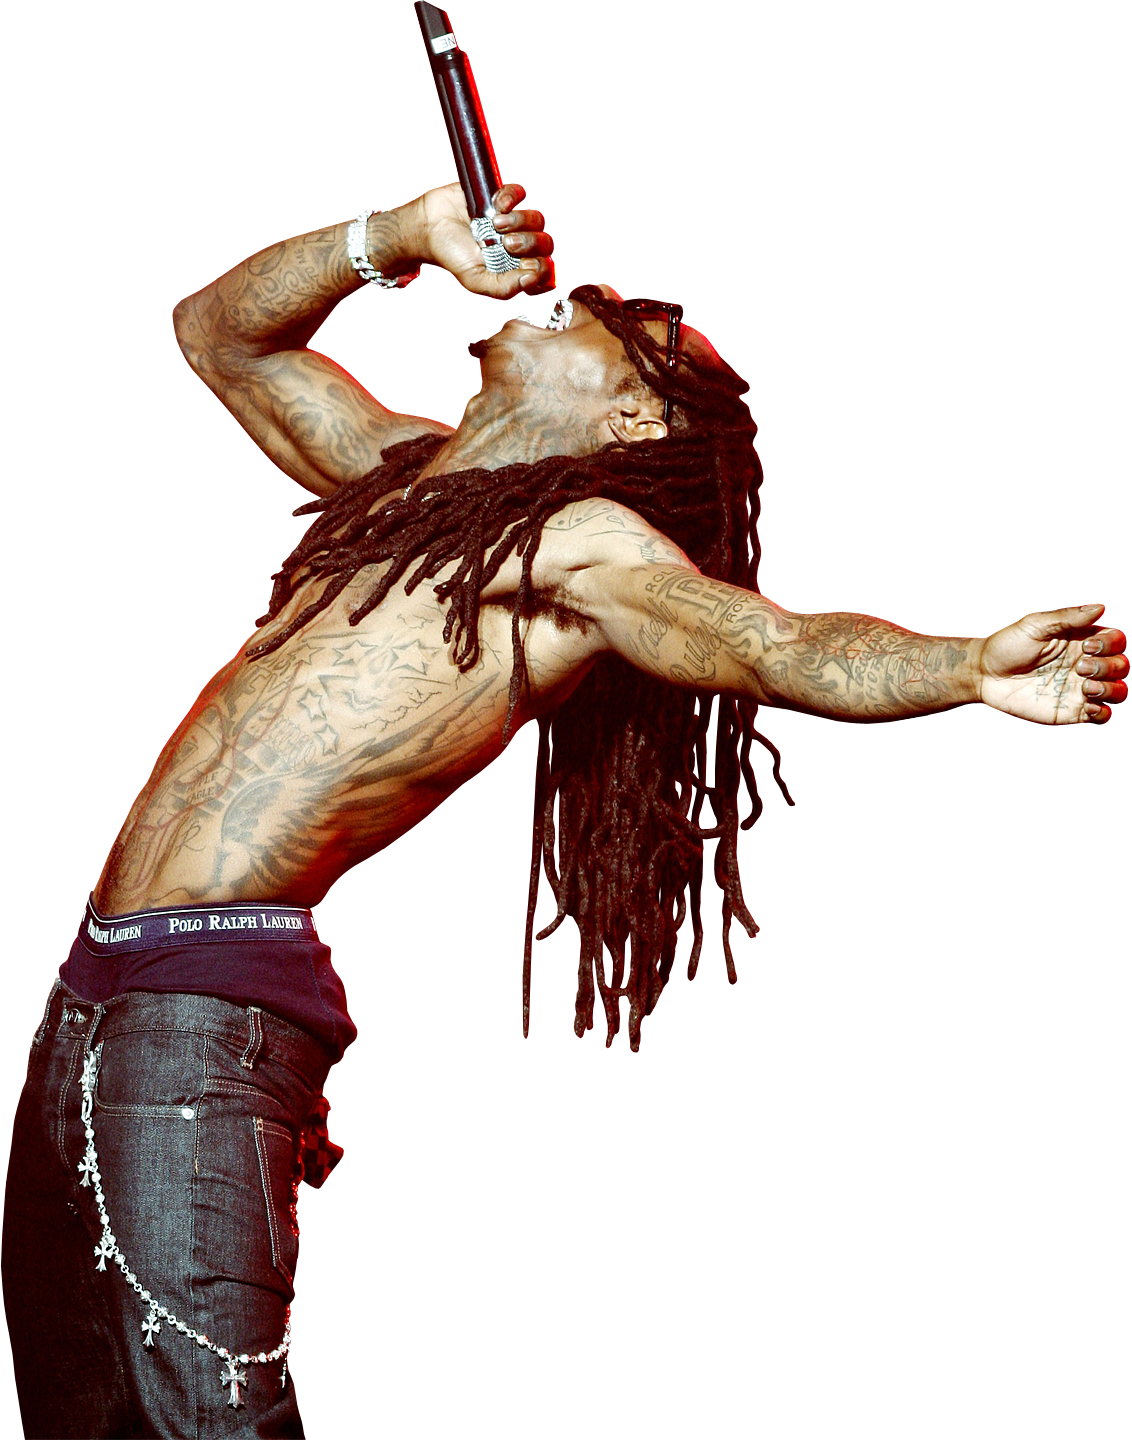 Lil Wayne PNG by maarcopngs P